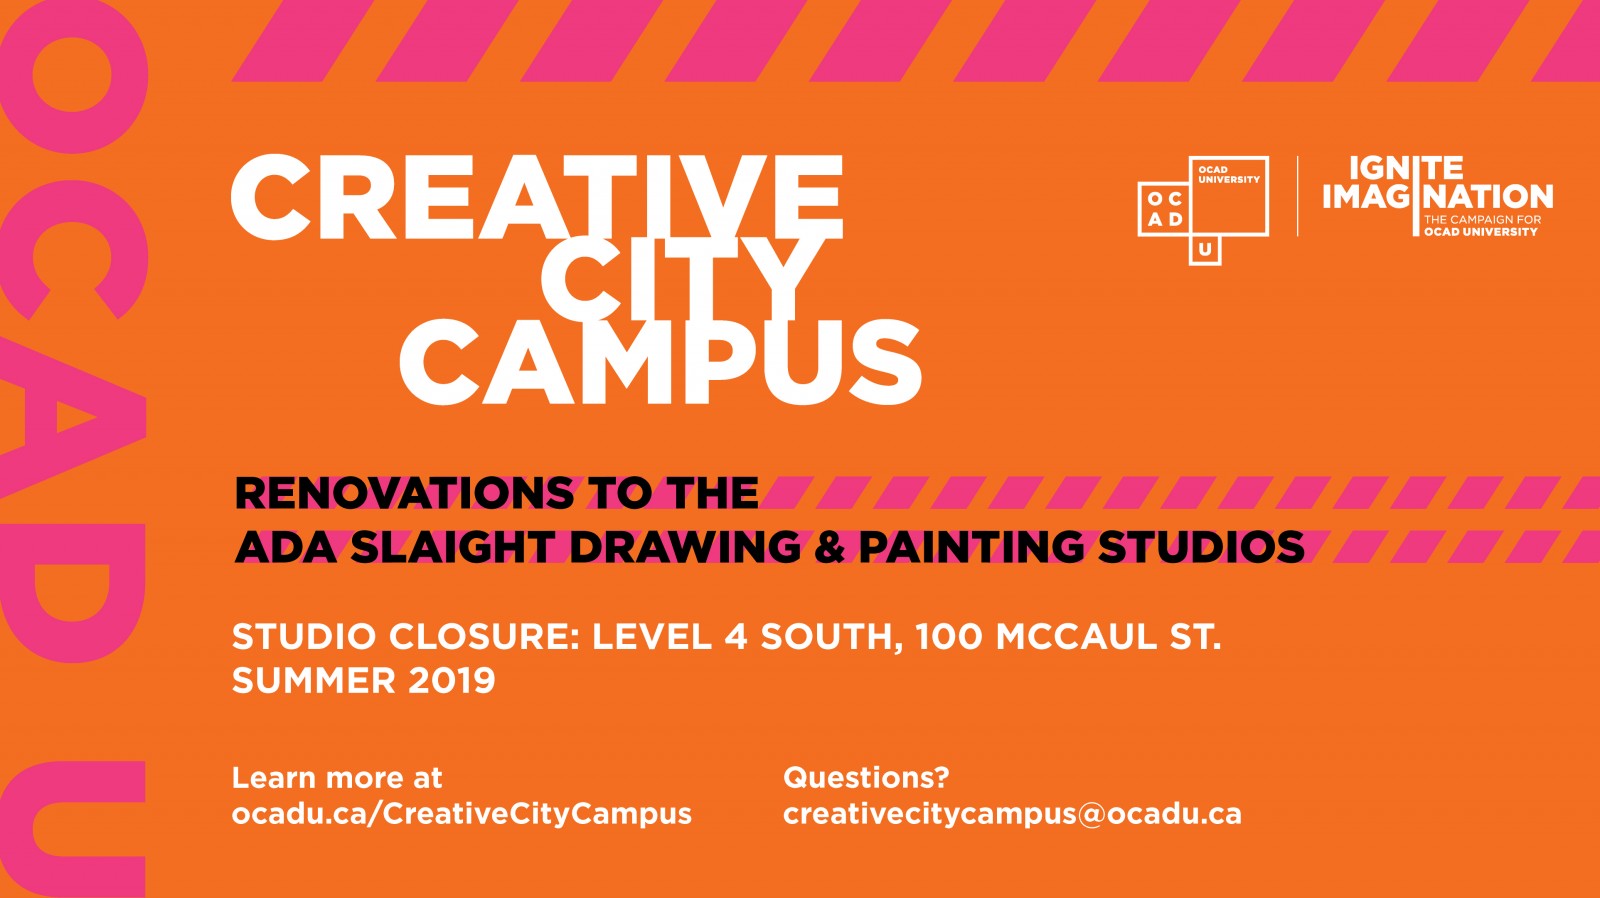 Creative City Campus - Level 4 closure